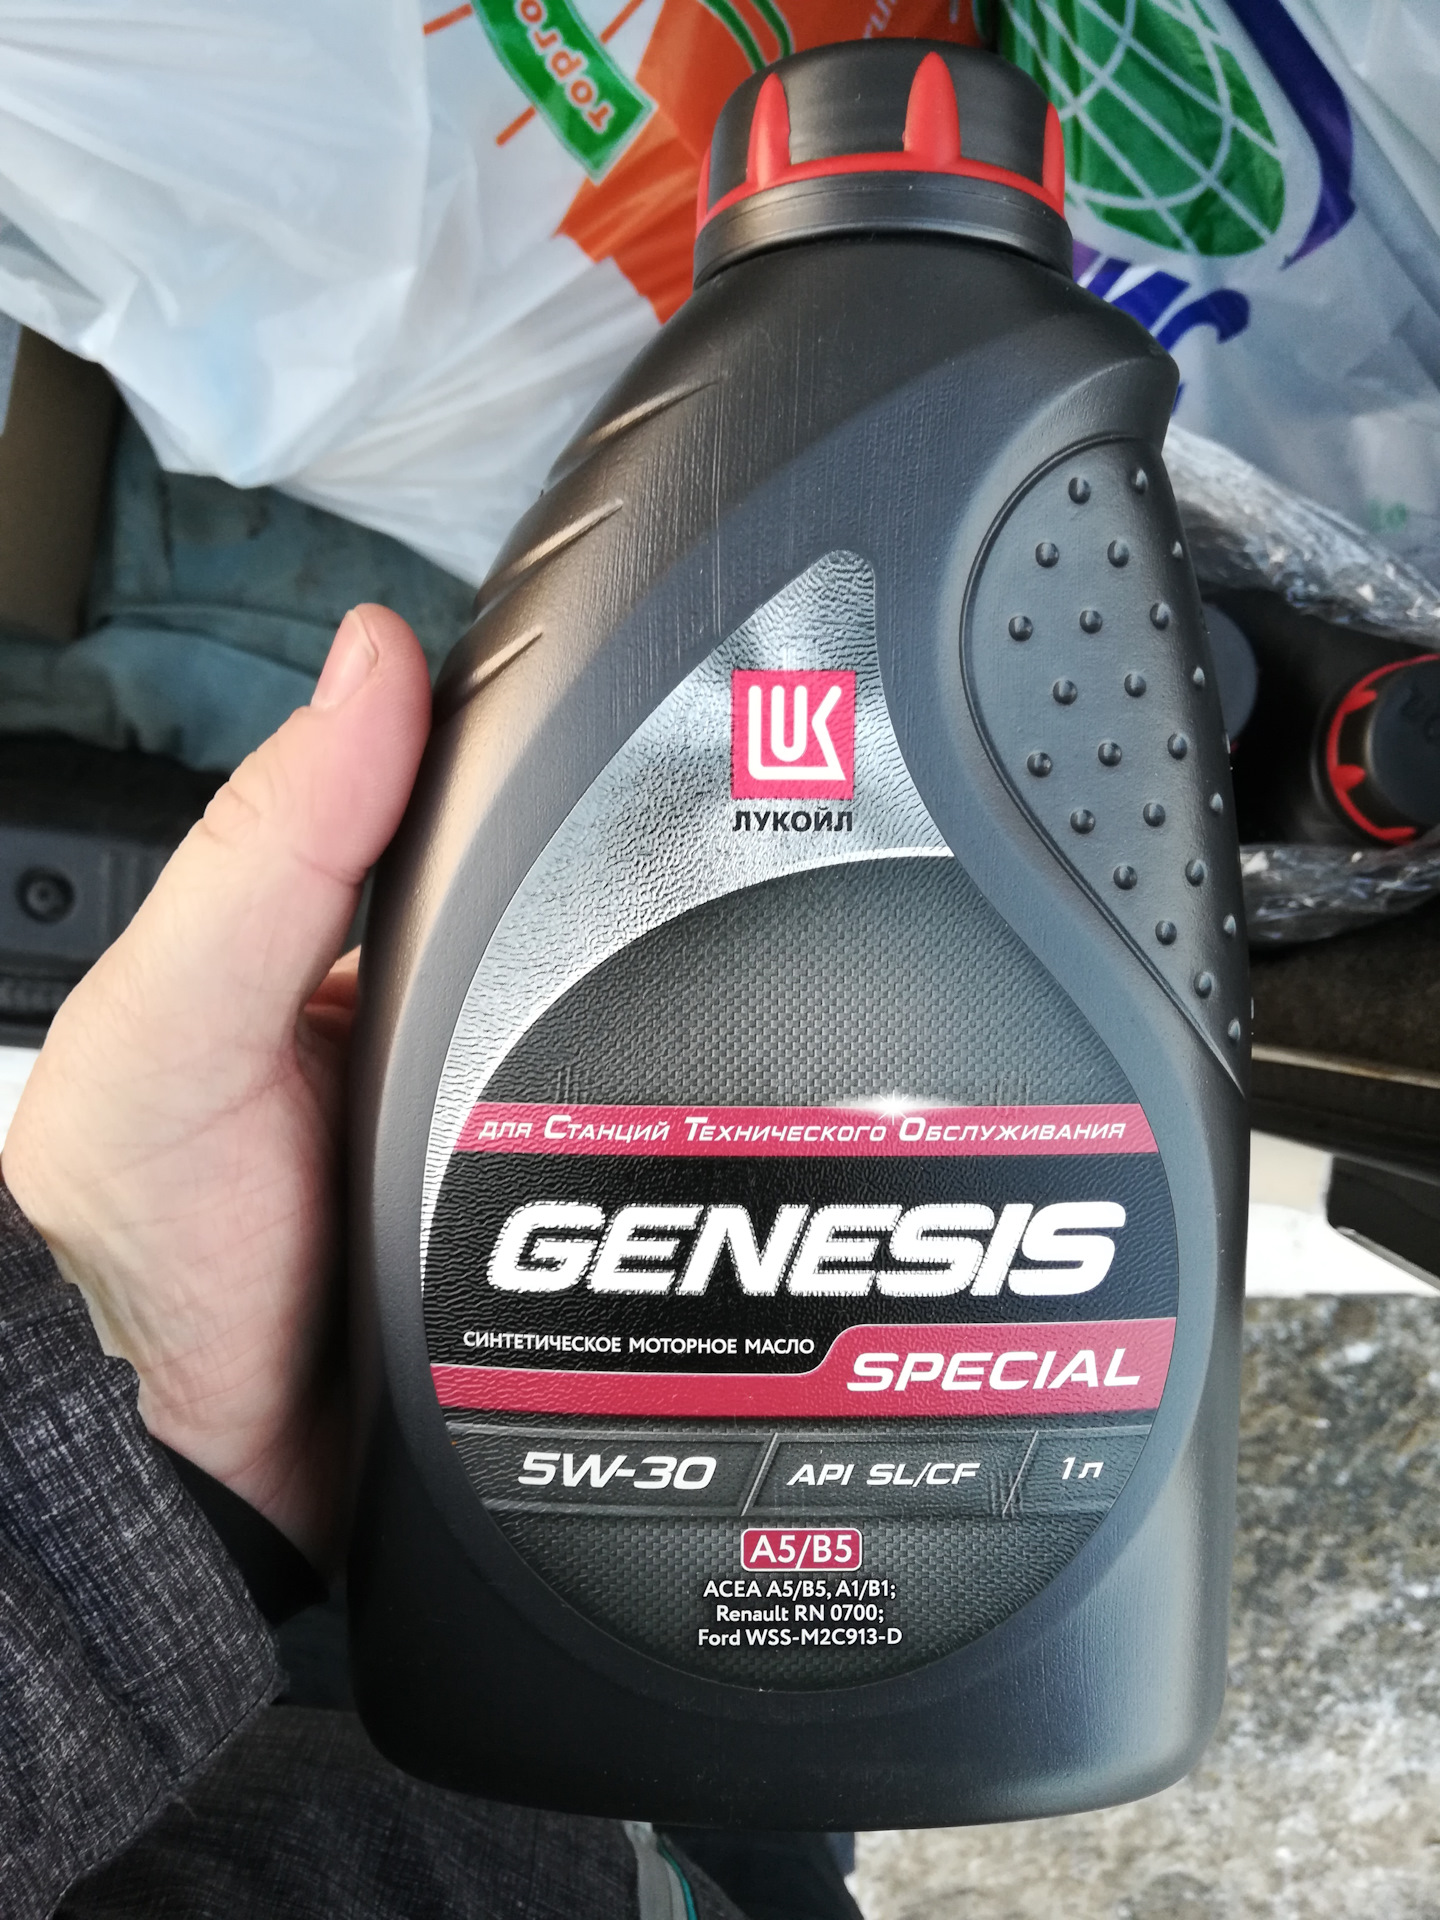 Lukoil genesis special. Lukoil Genesis Special 5w-30. Лукойл Генезис специал 5w30 а5. Масло Genesis Special 5w30. Lukoil Genesis Special c4 5w-30 5l.